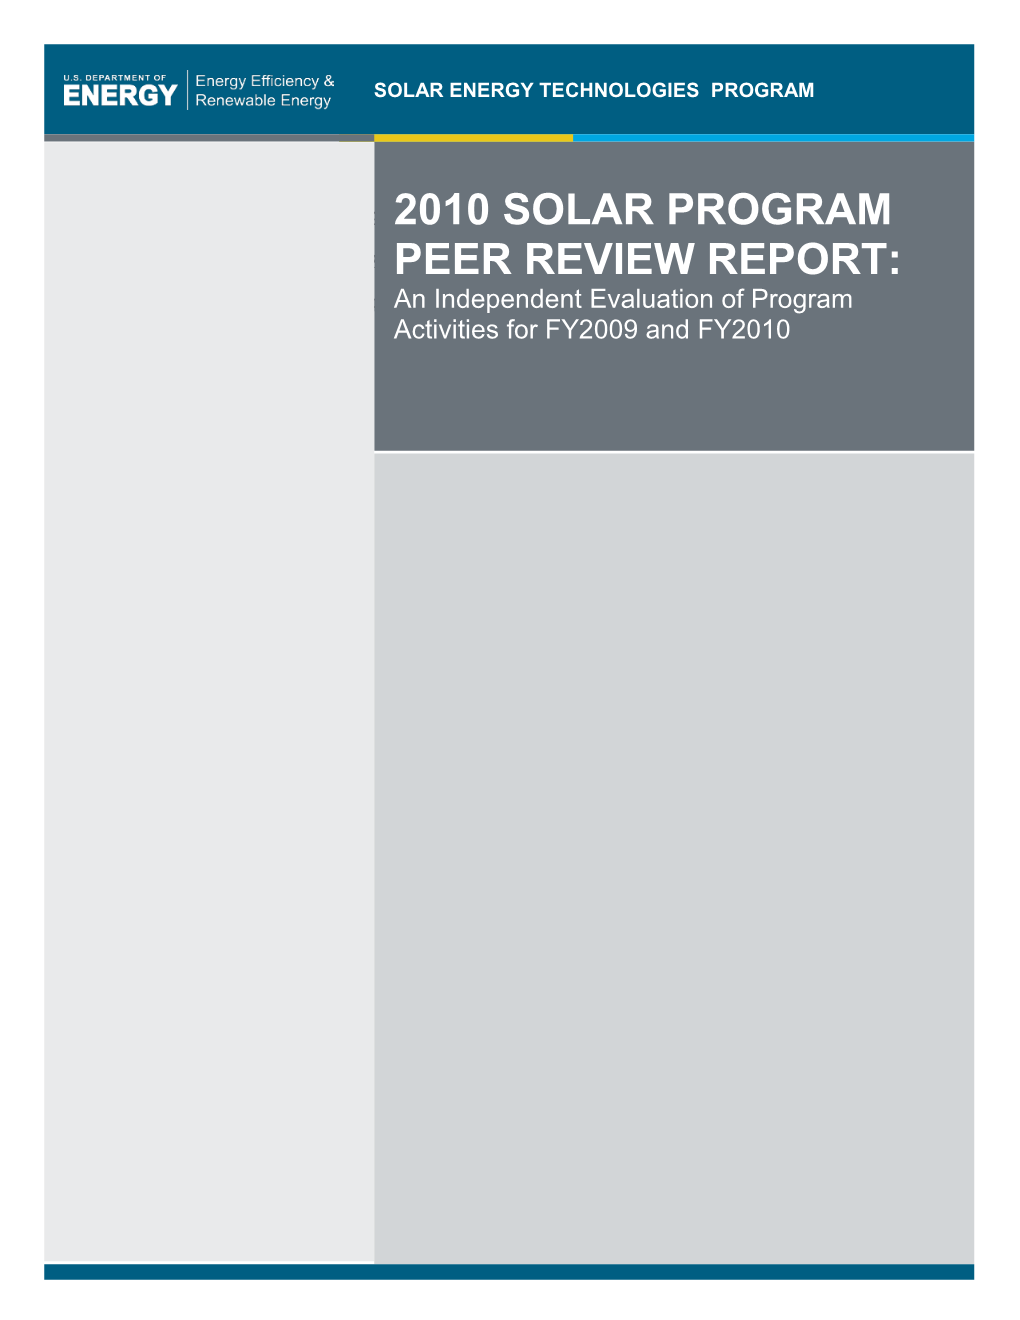 2010 Solar Program Peer Review Report